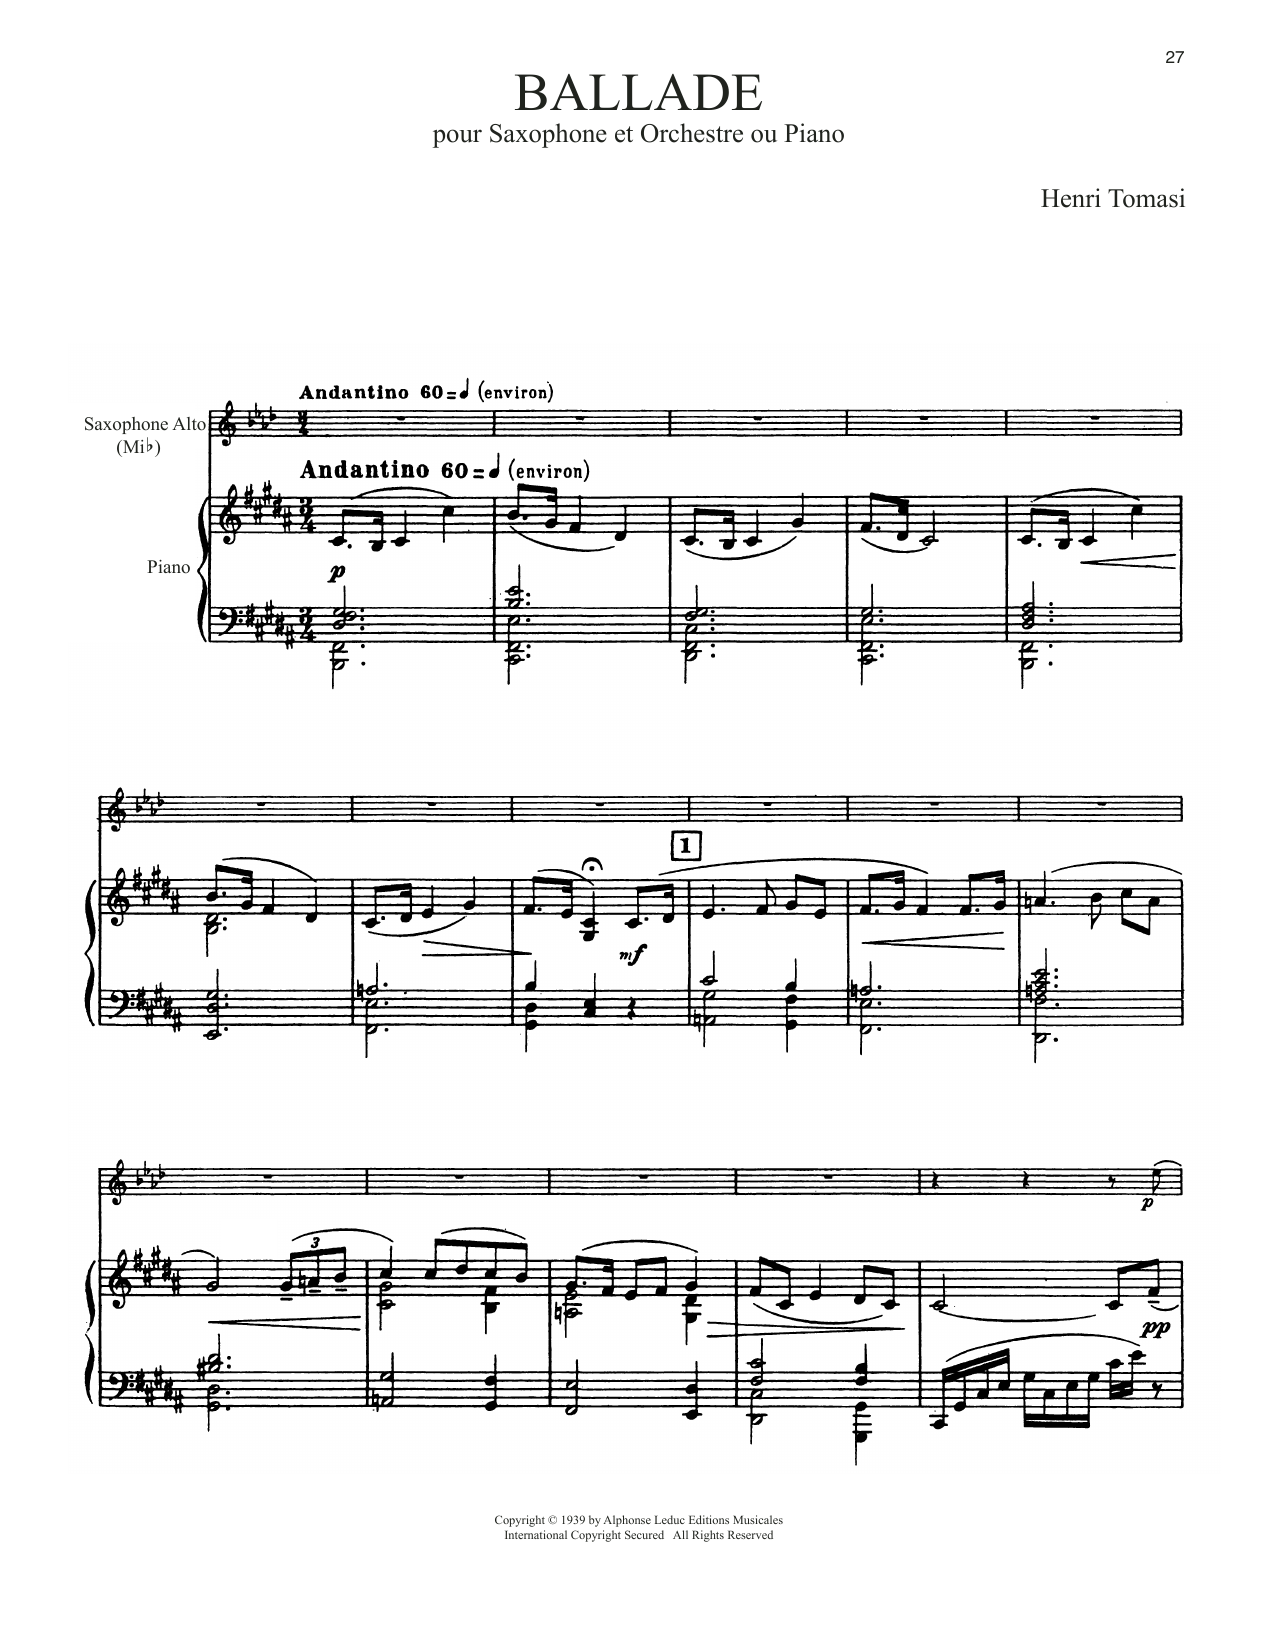 Download Henri Tomasi Ballade Sheet Music